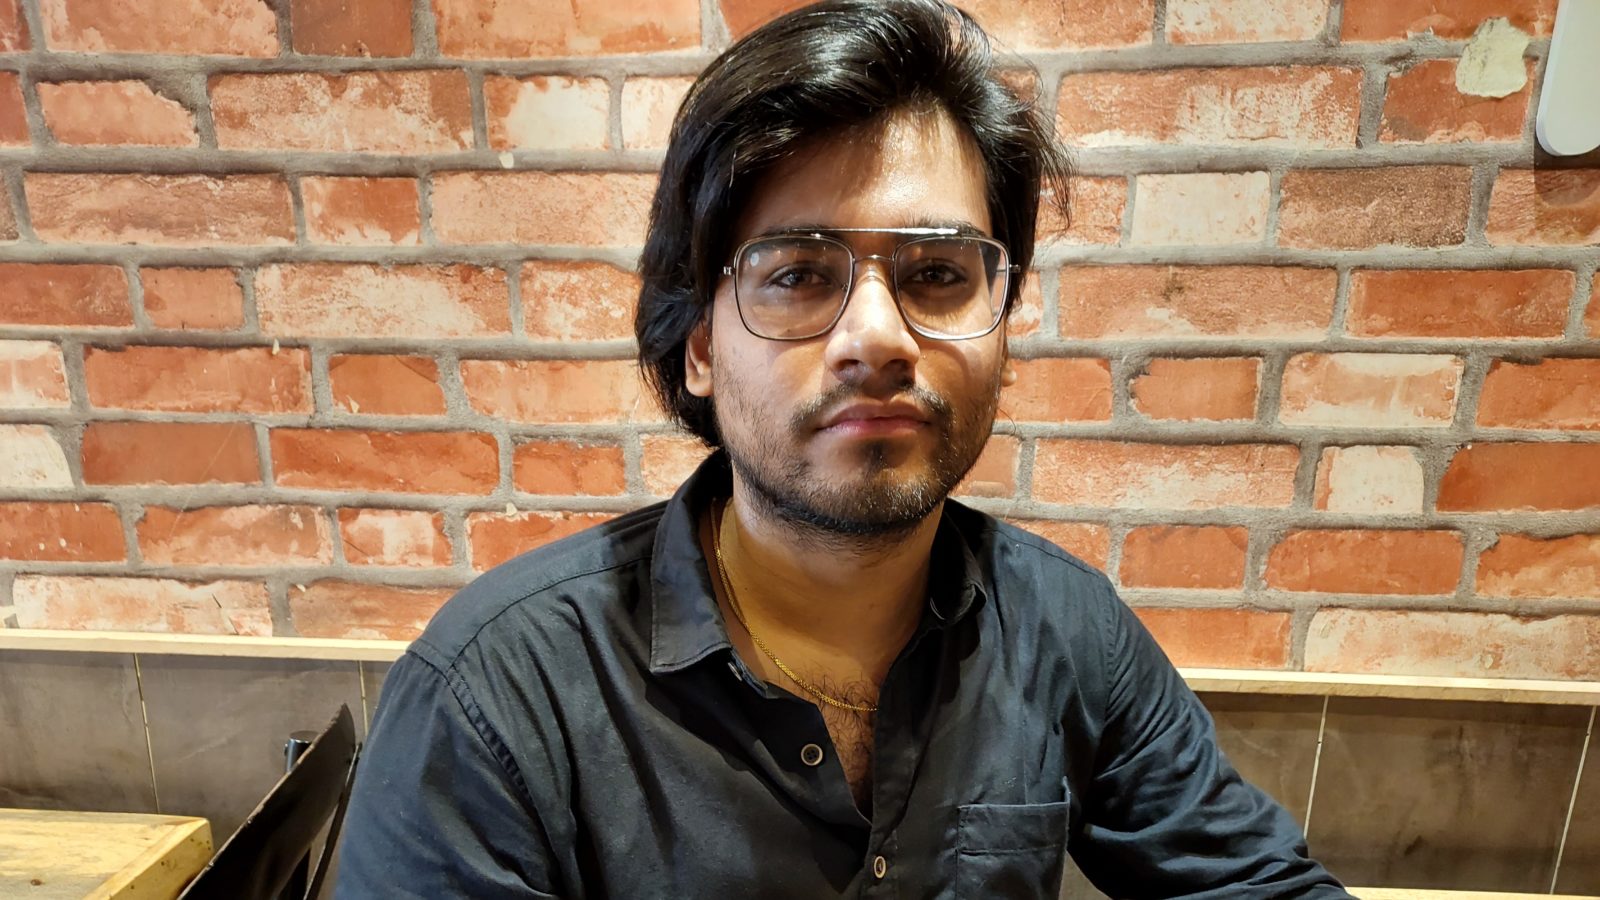 लखनऊ:-आईईटी के छात्र विवेक भारद्वाज को लंदन गूगल से मिली 1.37 करोड़ की सालाना नौकरी का पैकेज